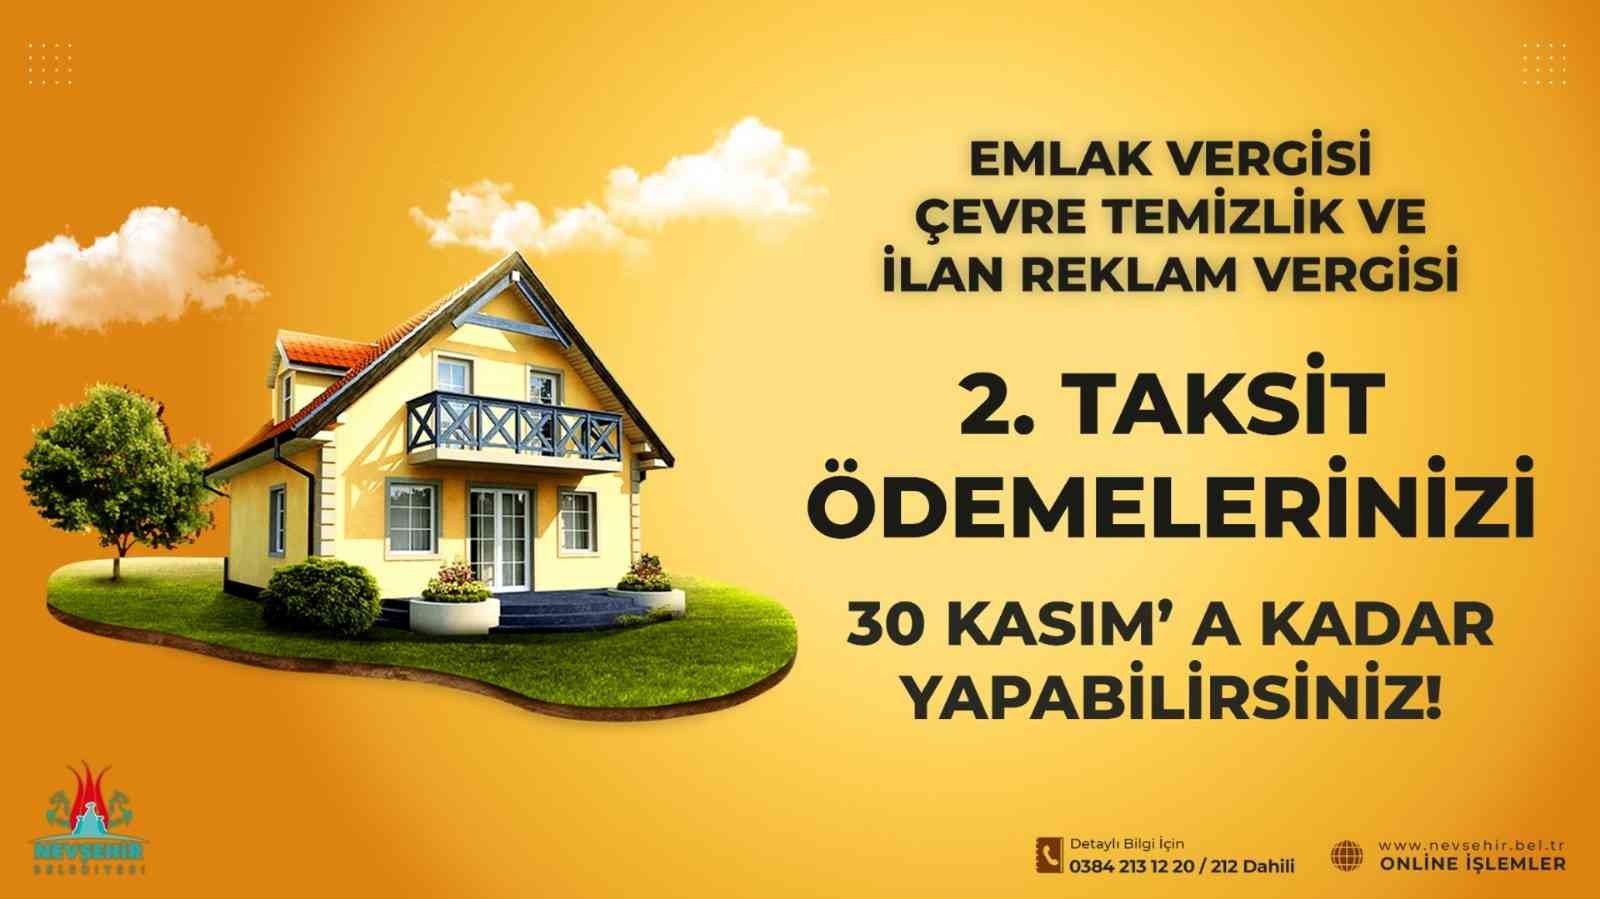 Nevşehir Belediyesi: Emlak, çevre temizlik ve ilan reklam verginizi ödemeyi unutmayın #nevsehir